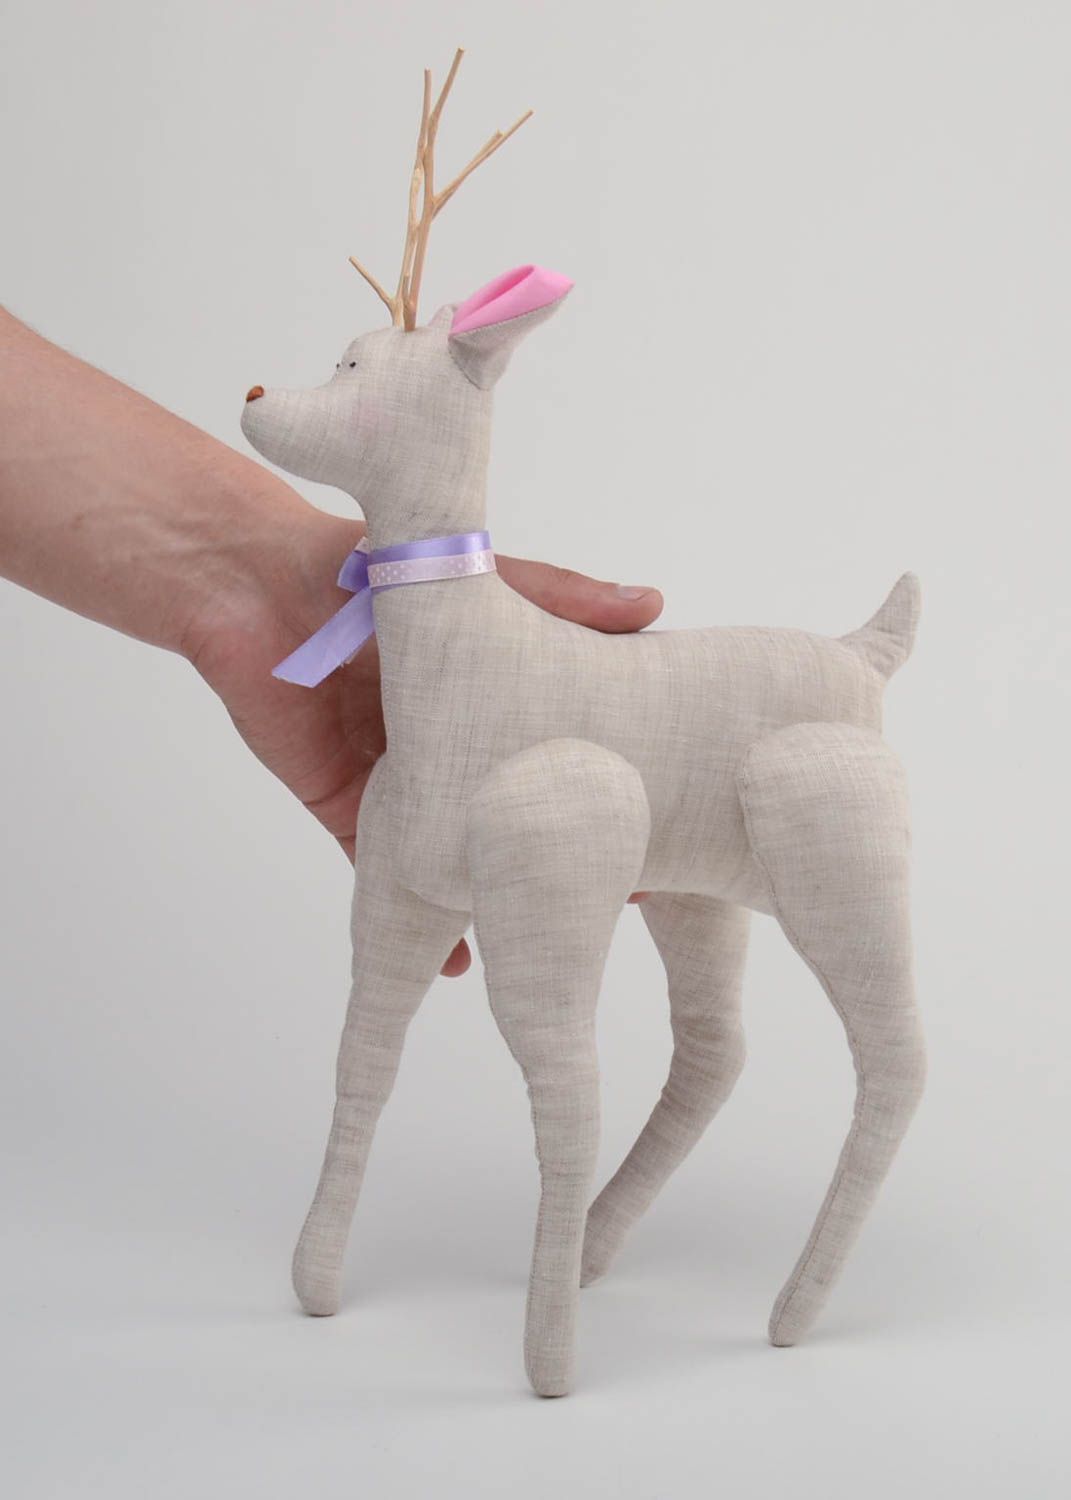 Тканевая игрушка олень из льняной ткани ручной работы для интерьера и детей фото 5